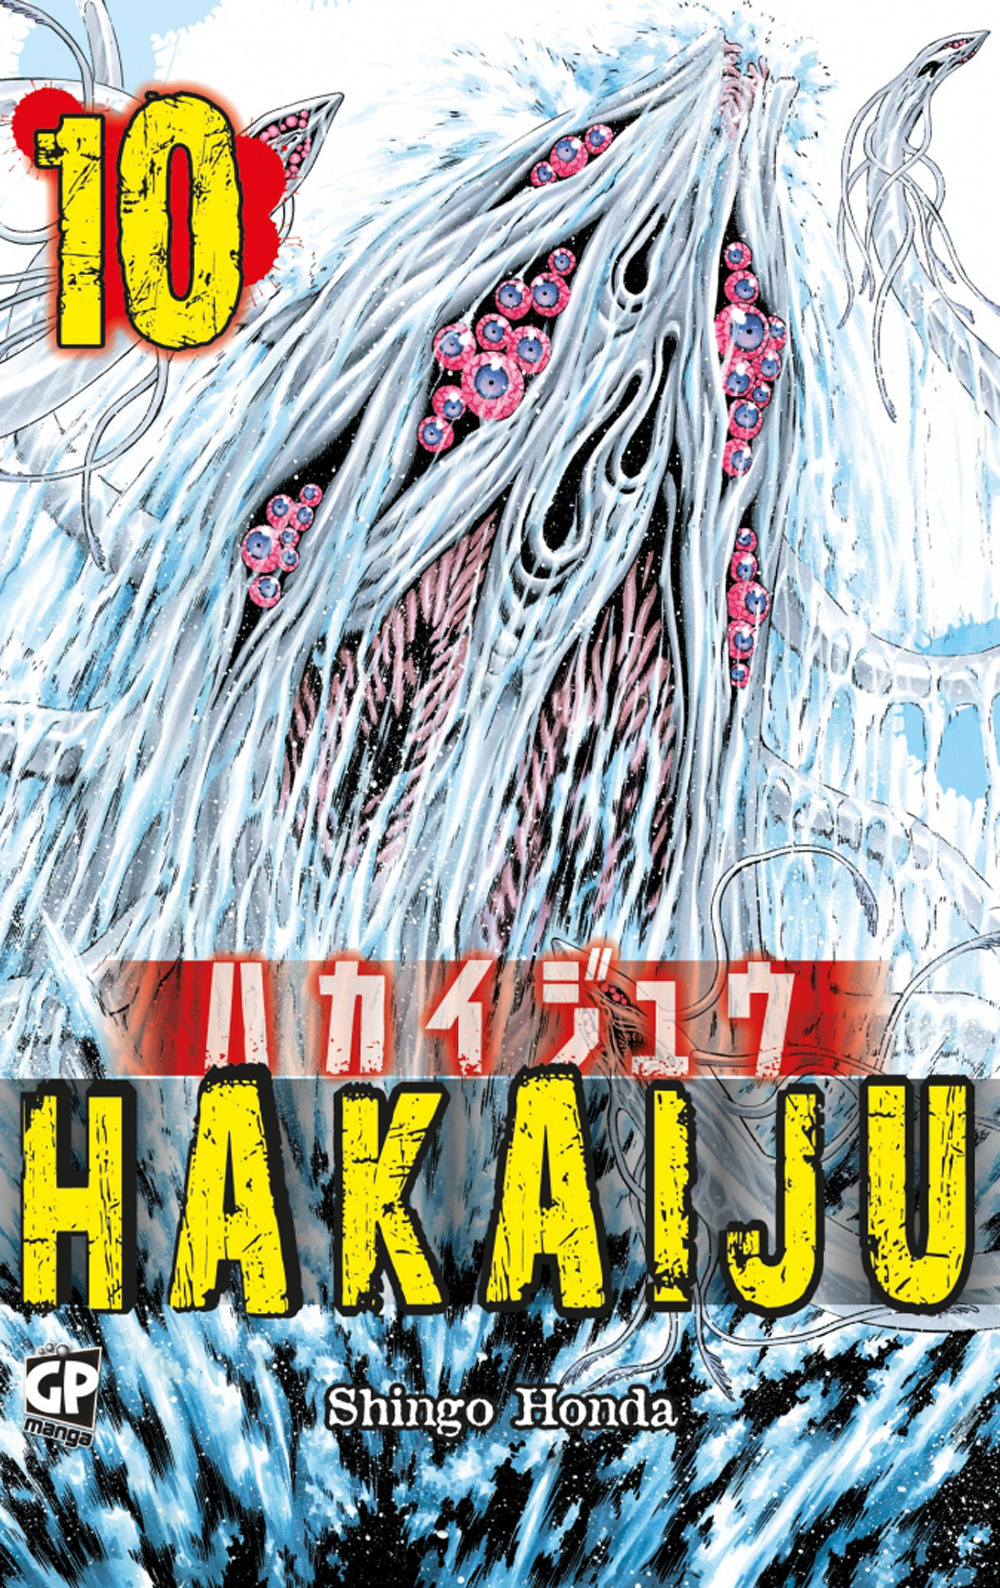 Hakaiju. Vol. 10